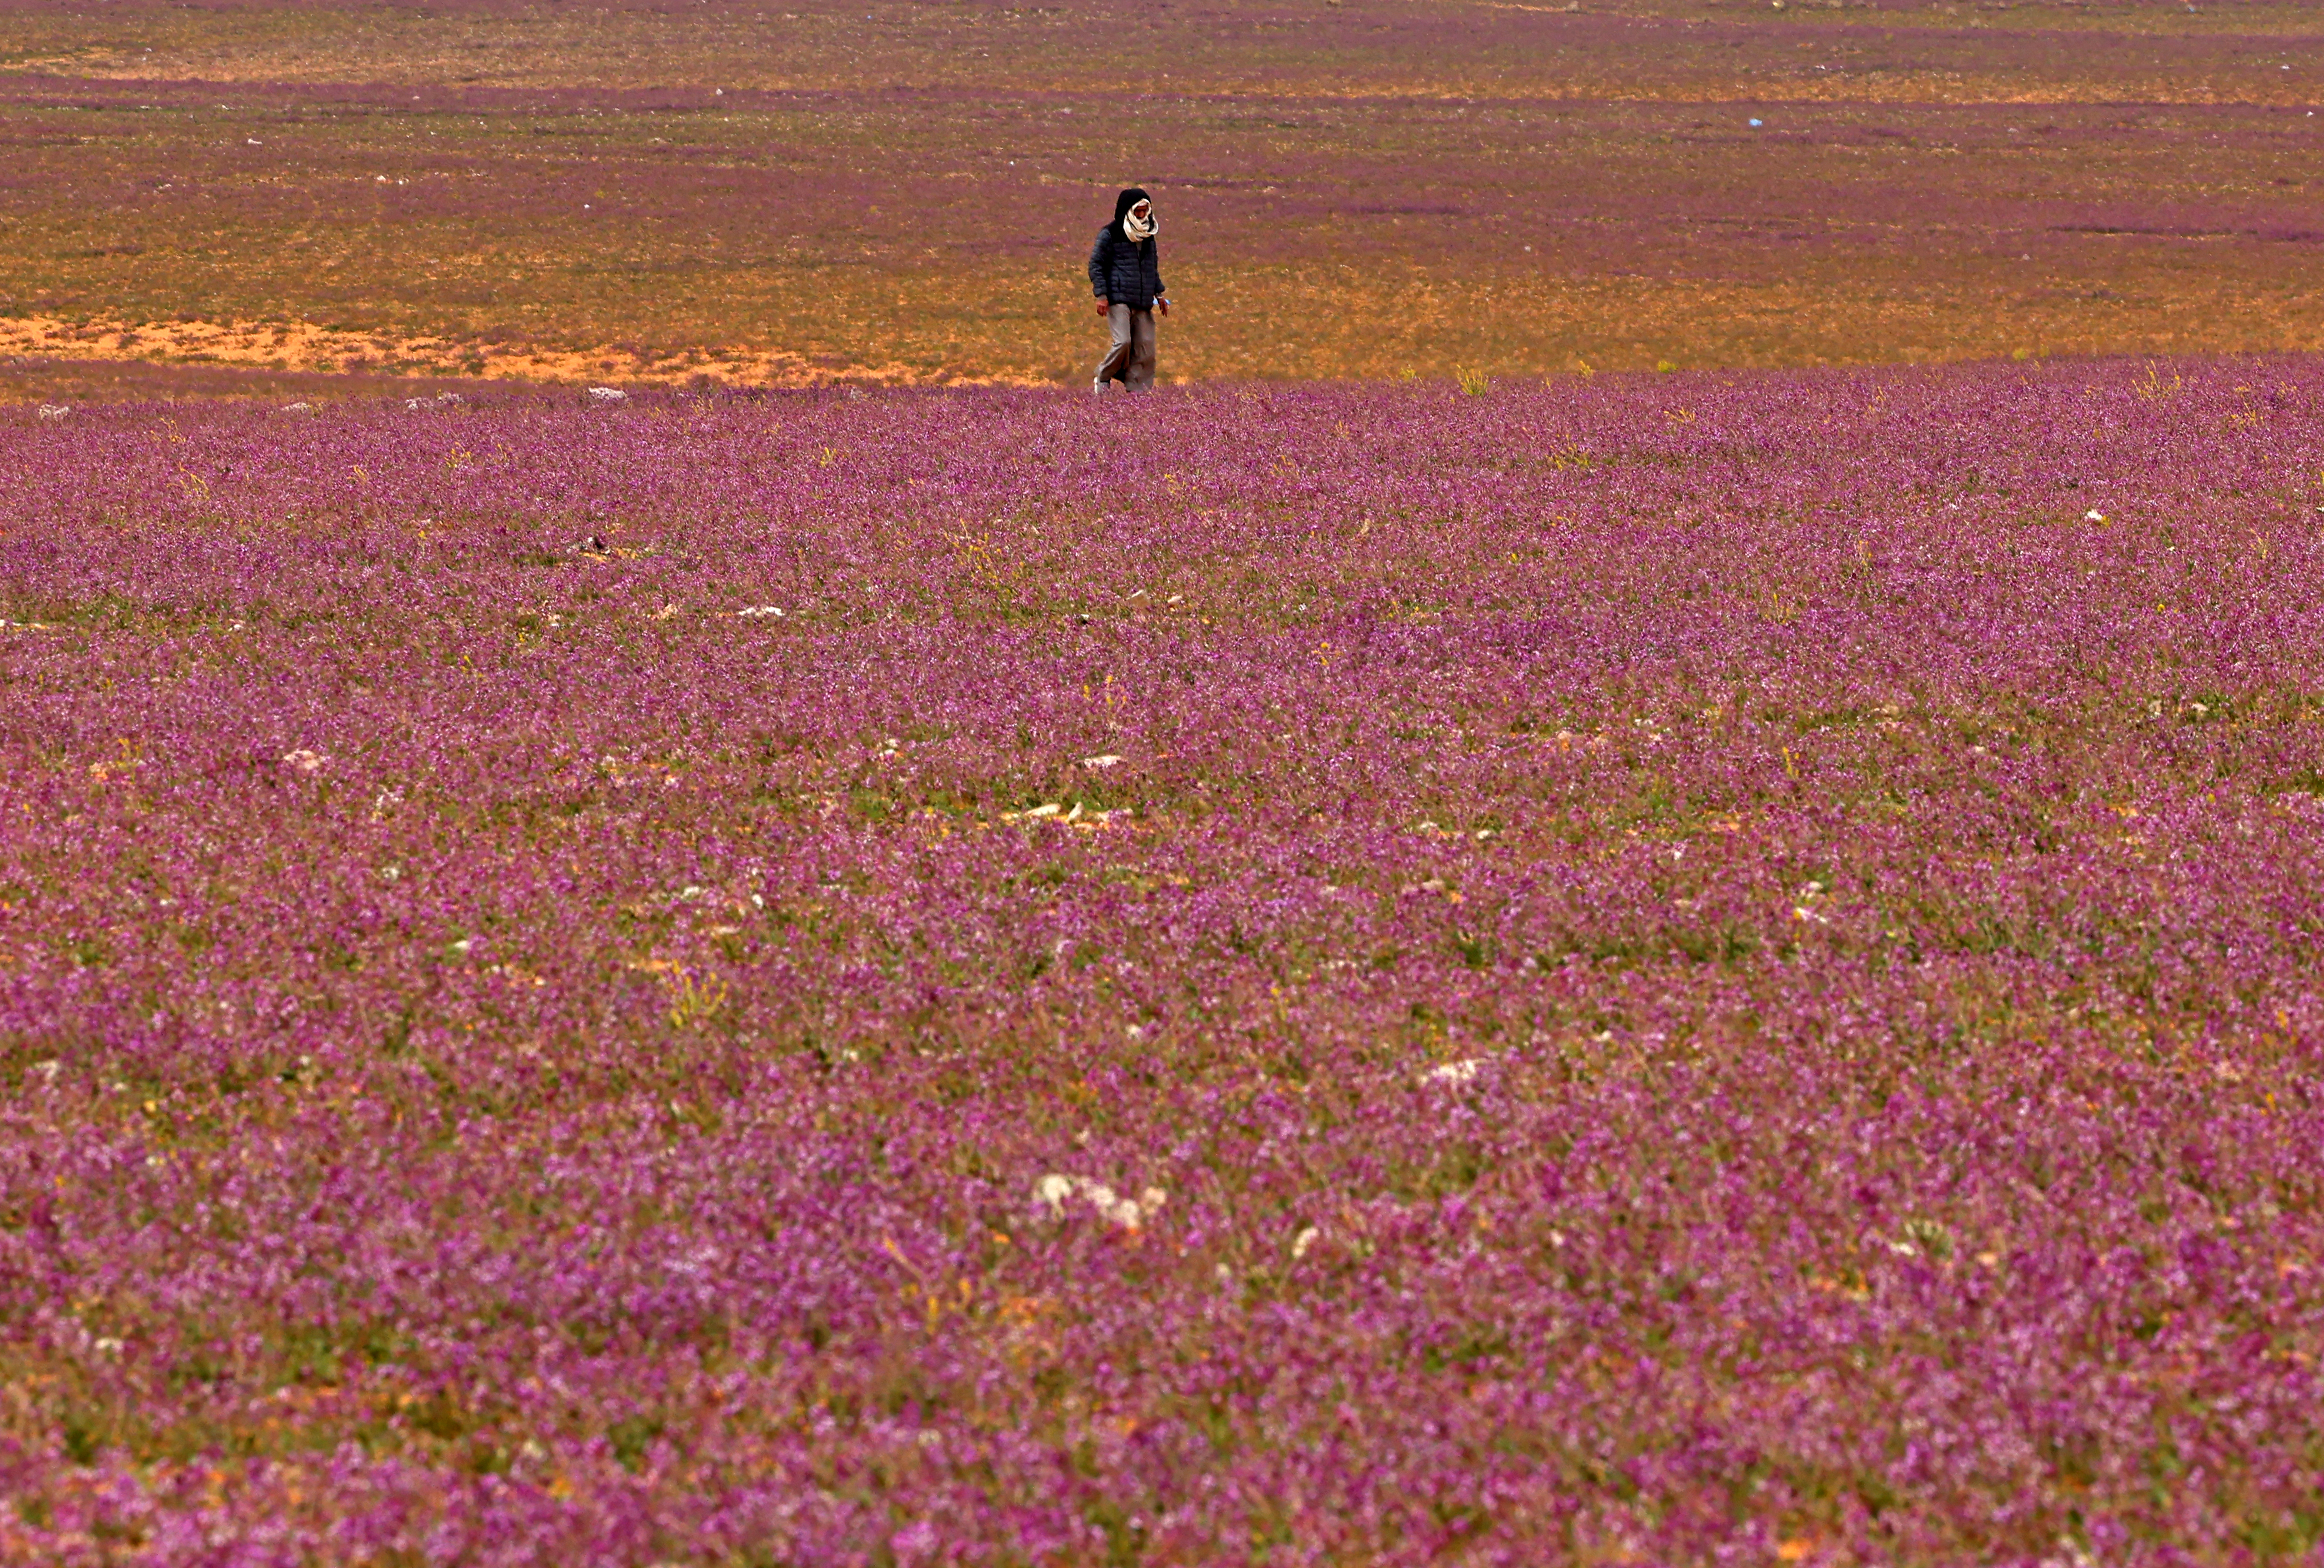 El extraordinario espectáculo de un desierto lleno de flores moradas en Arabia Saudita (FOTOS)